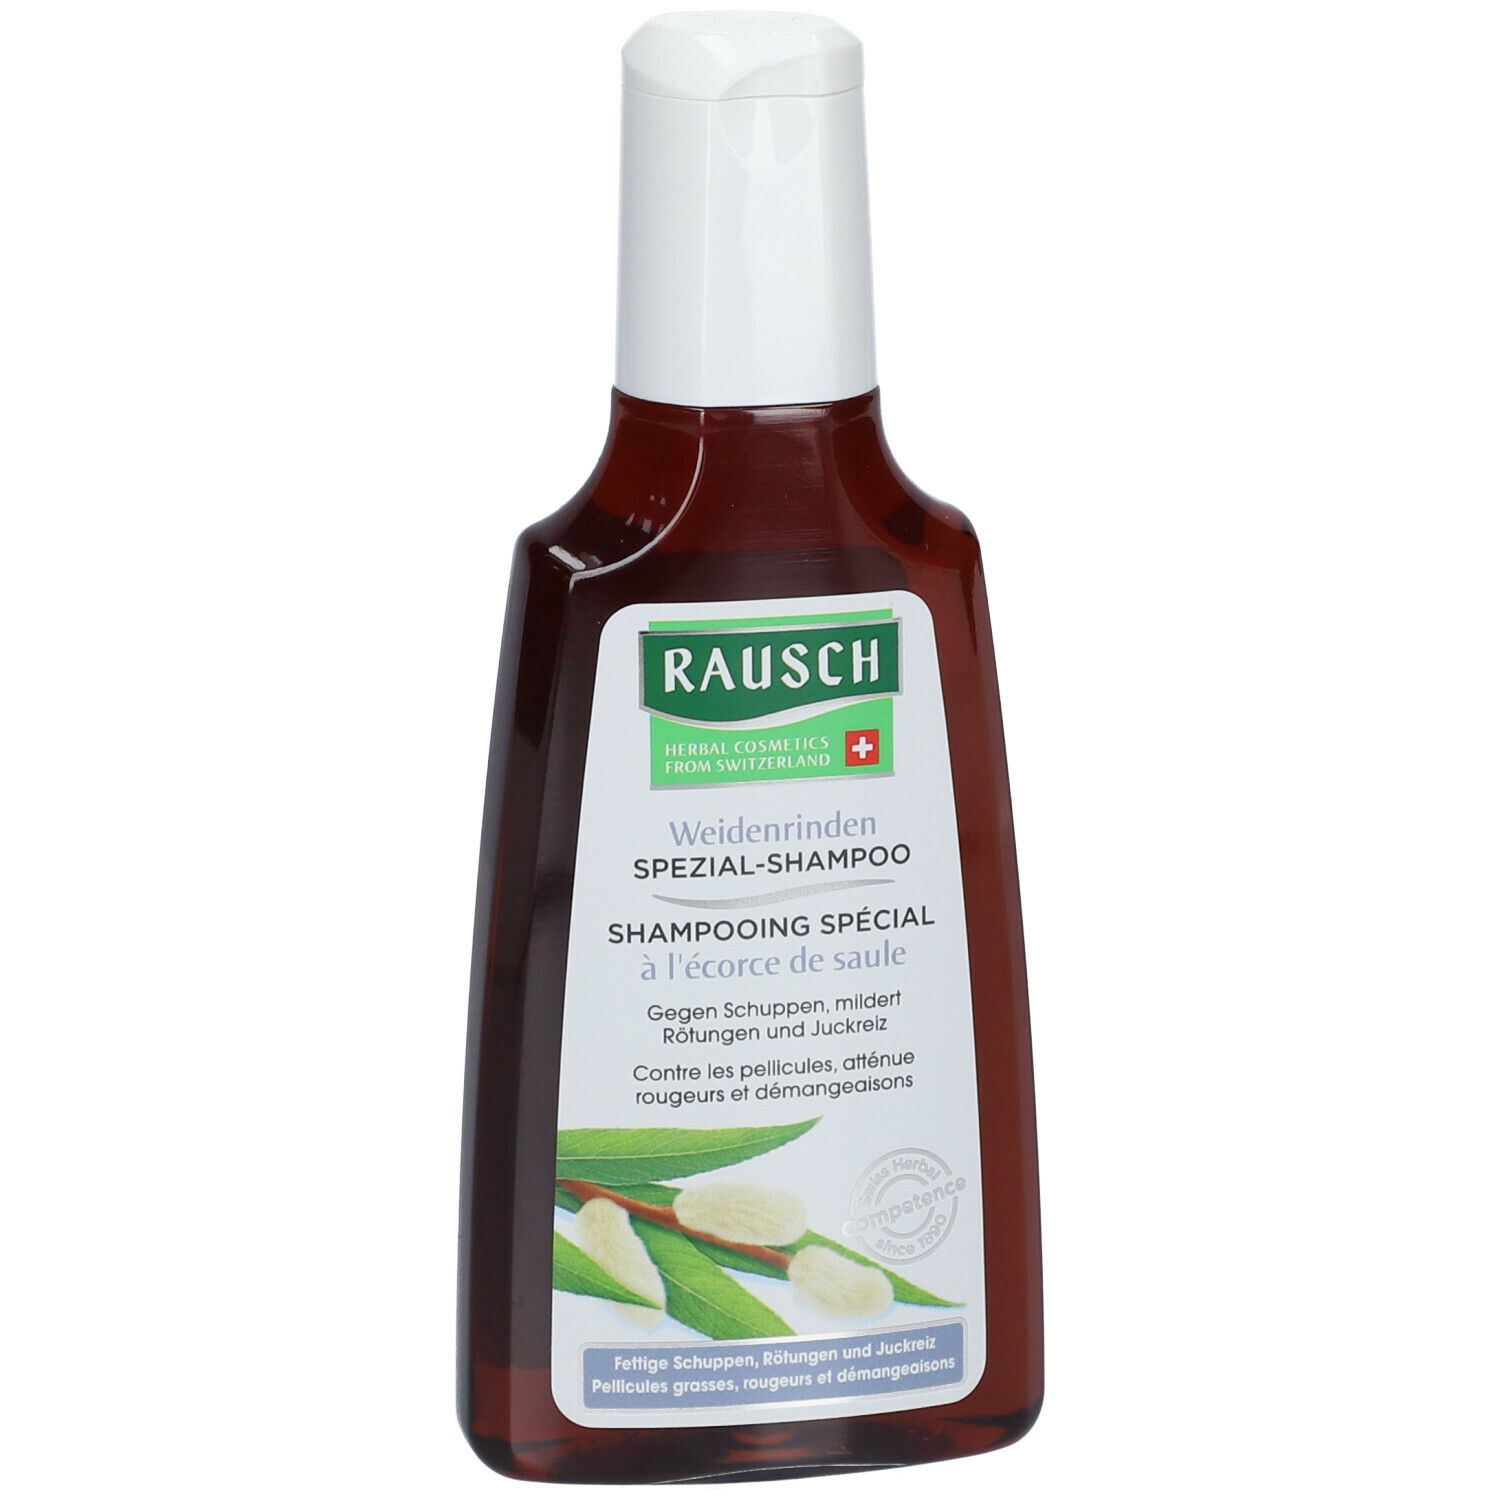 RAUSCH Weidenrinden Spezial-Shampoo